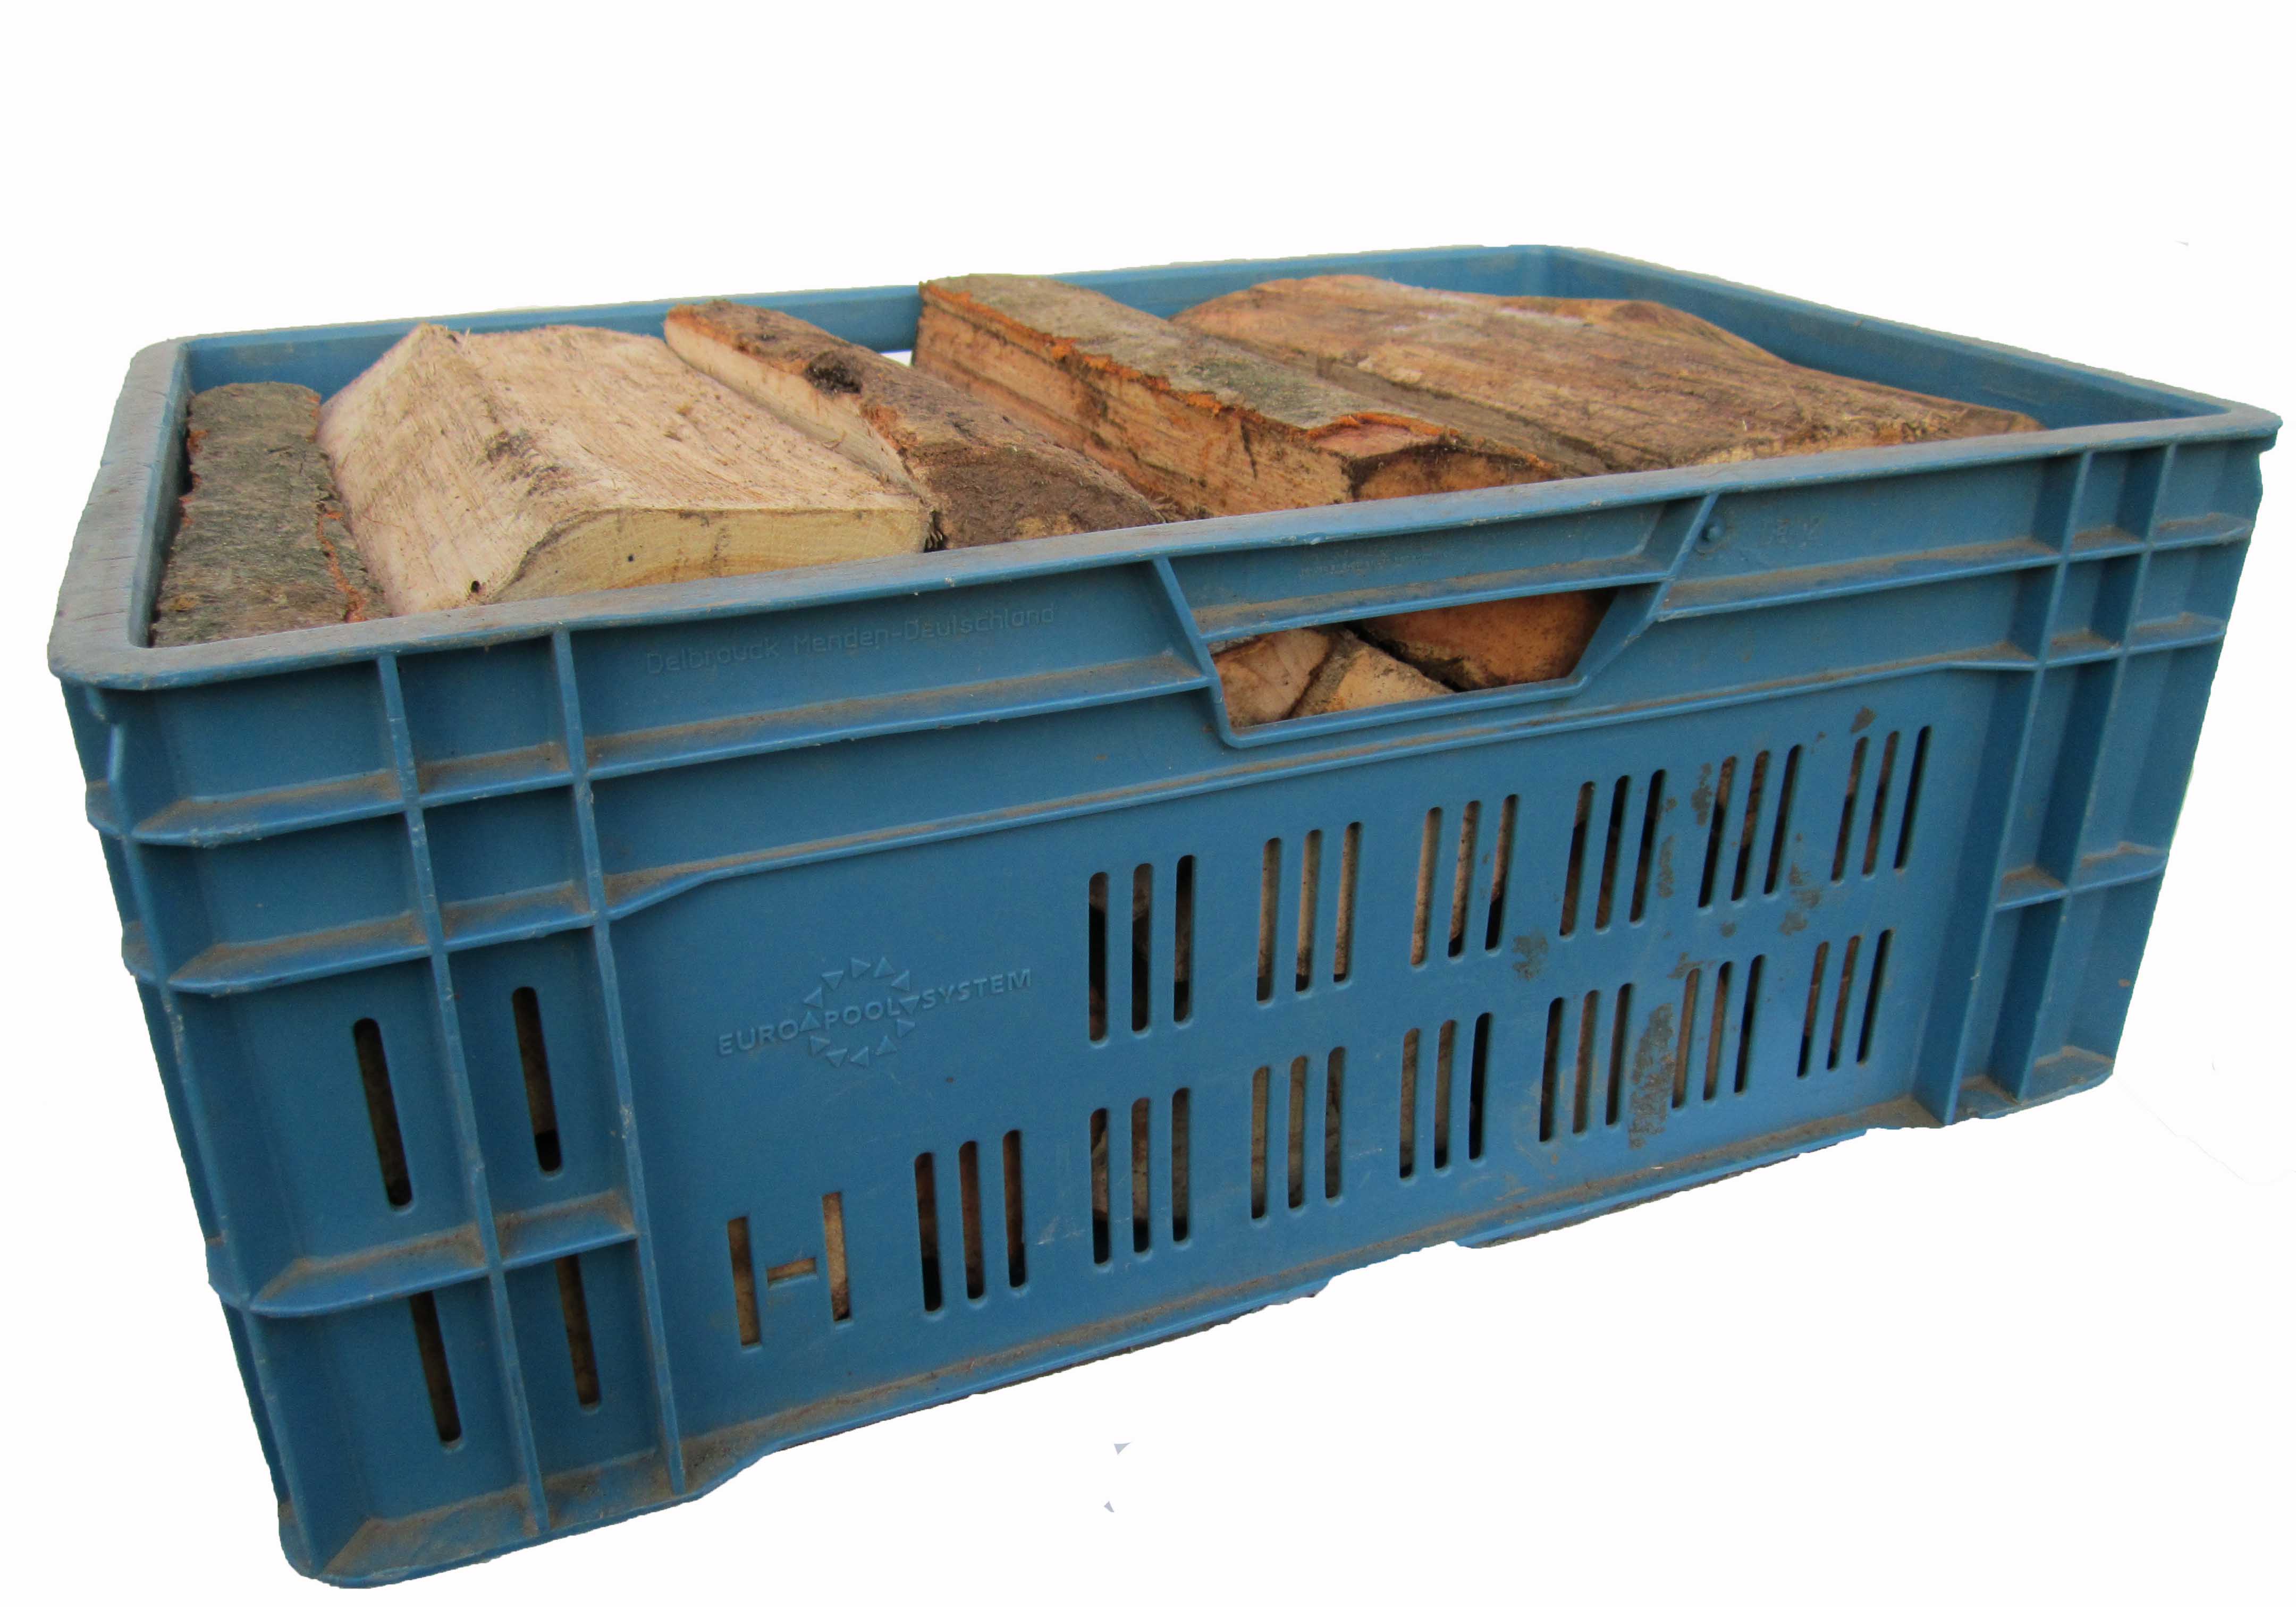 Zafido palivové dřevo bříza 30-35 cm skládané v přepravkách- 1x přepravka